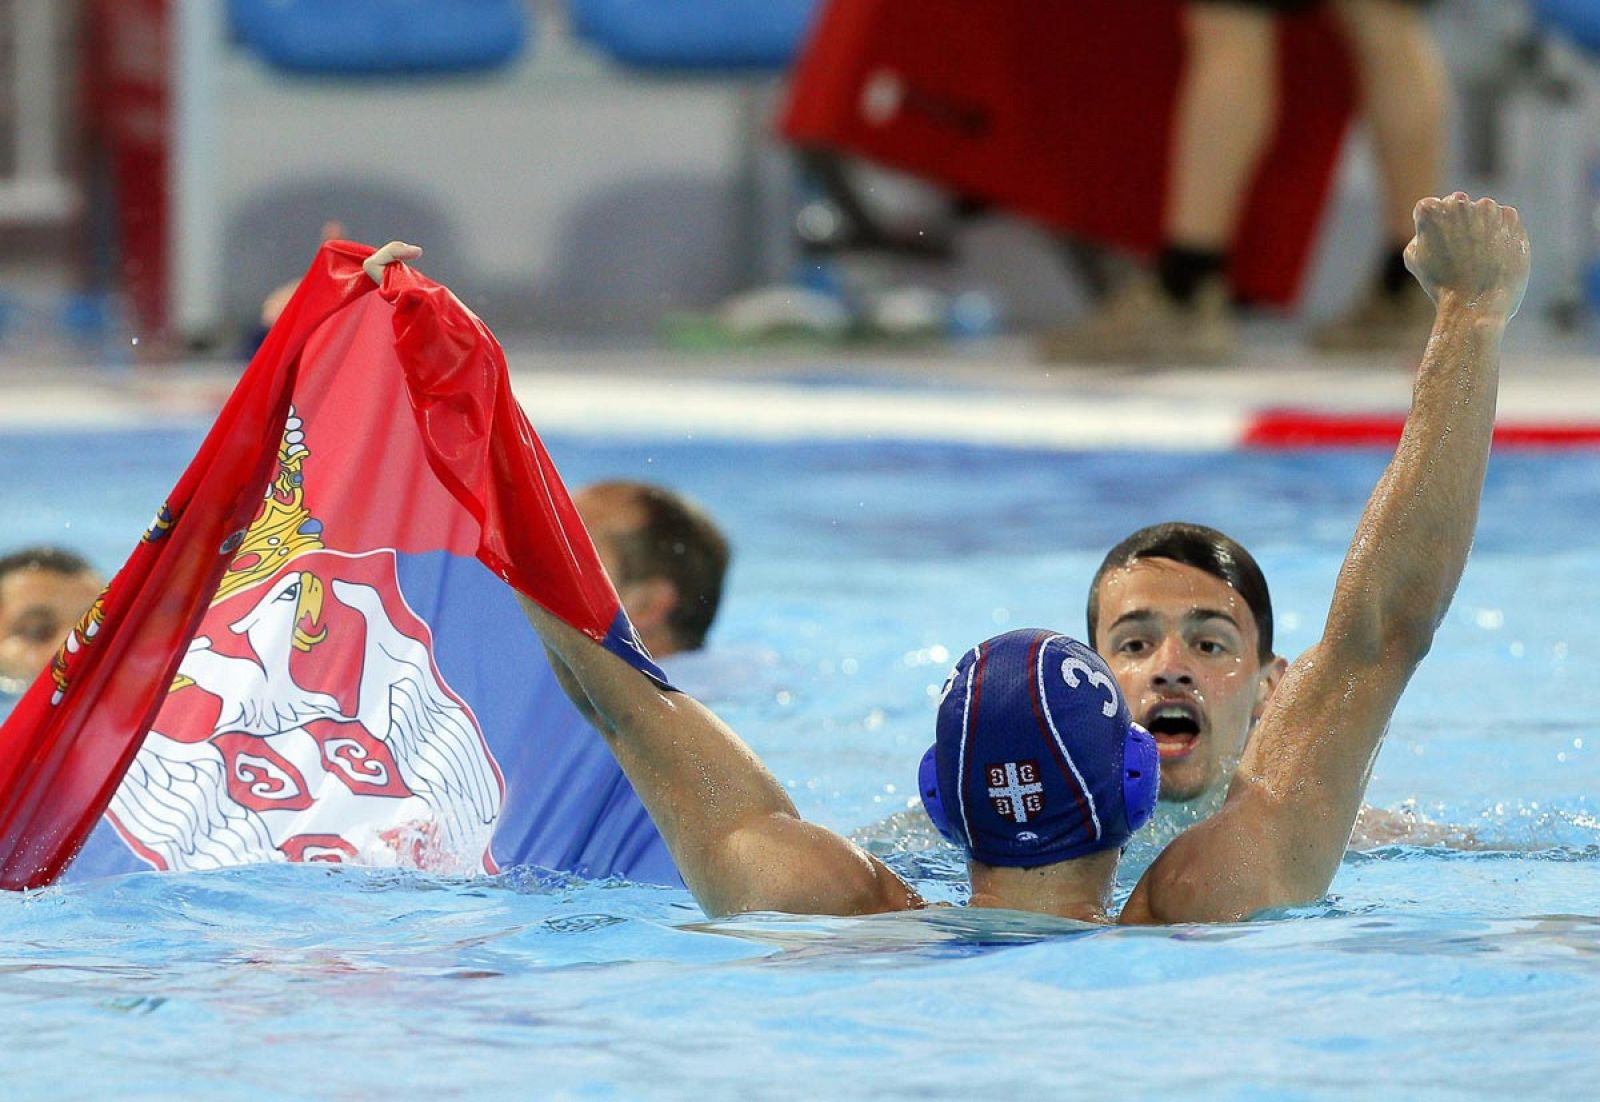 La selección española de waterpolo ha perdido la final ante Serbia por la mínima (8-7).